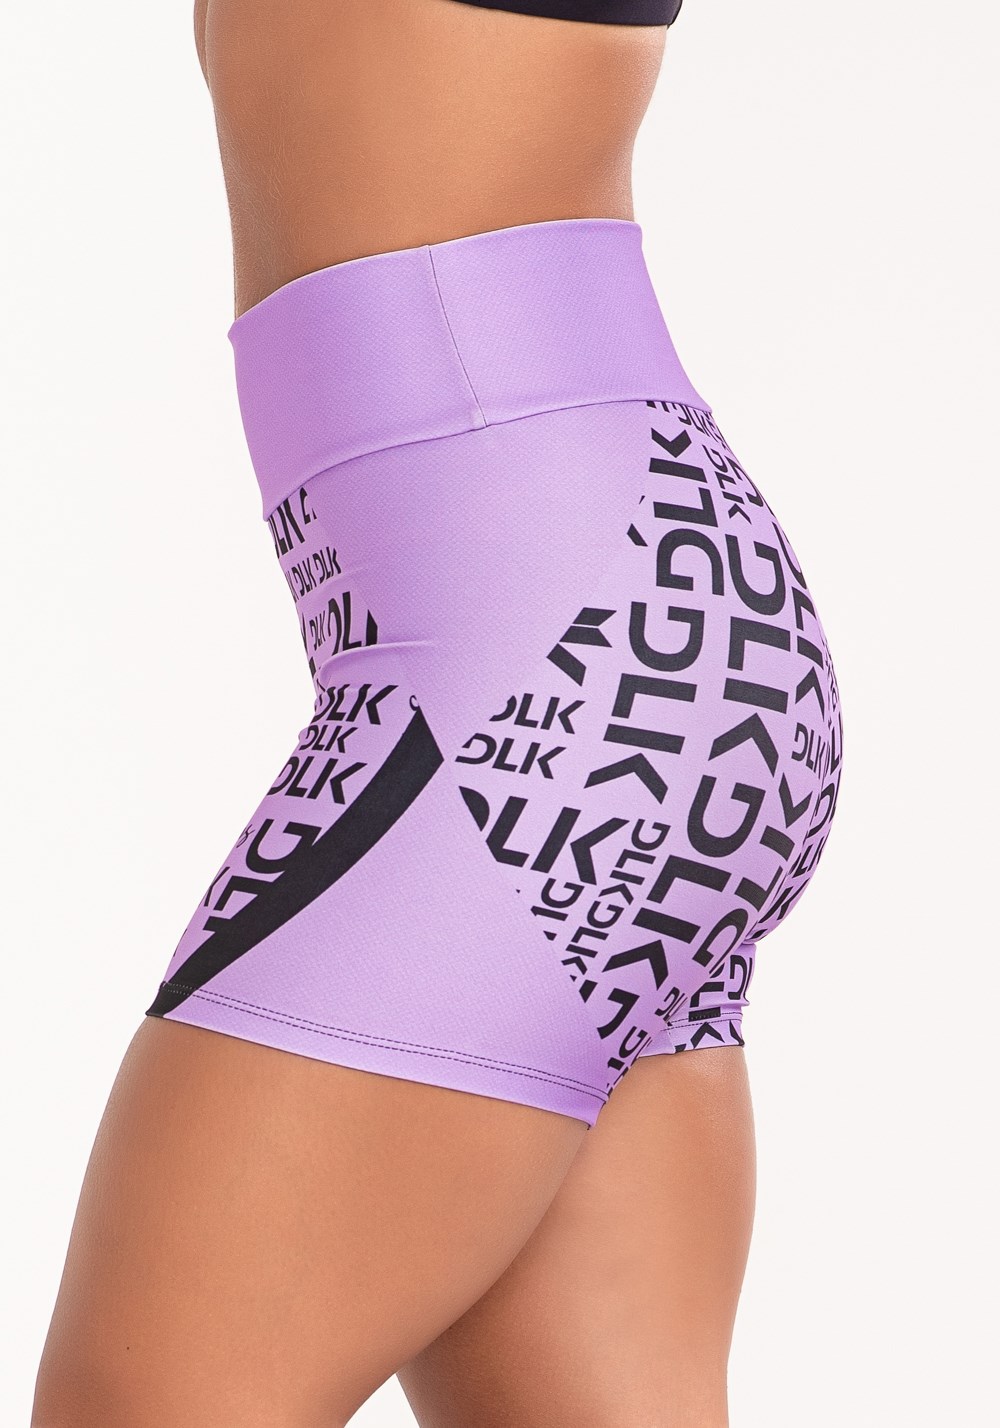 Short fitness feminino estampado dlk frases lilás printed